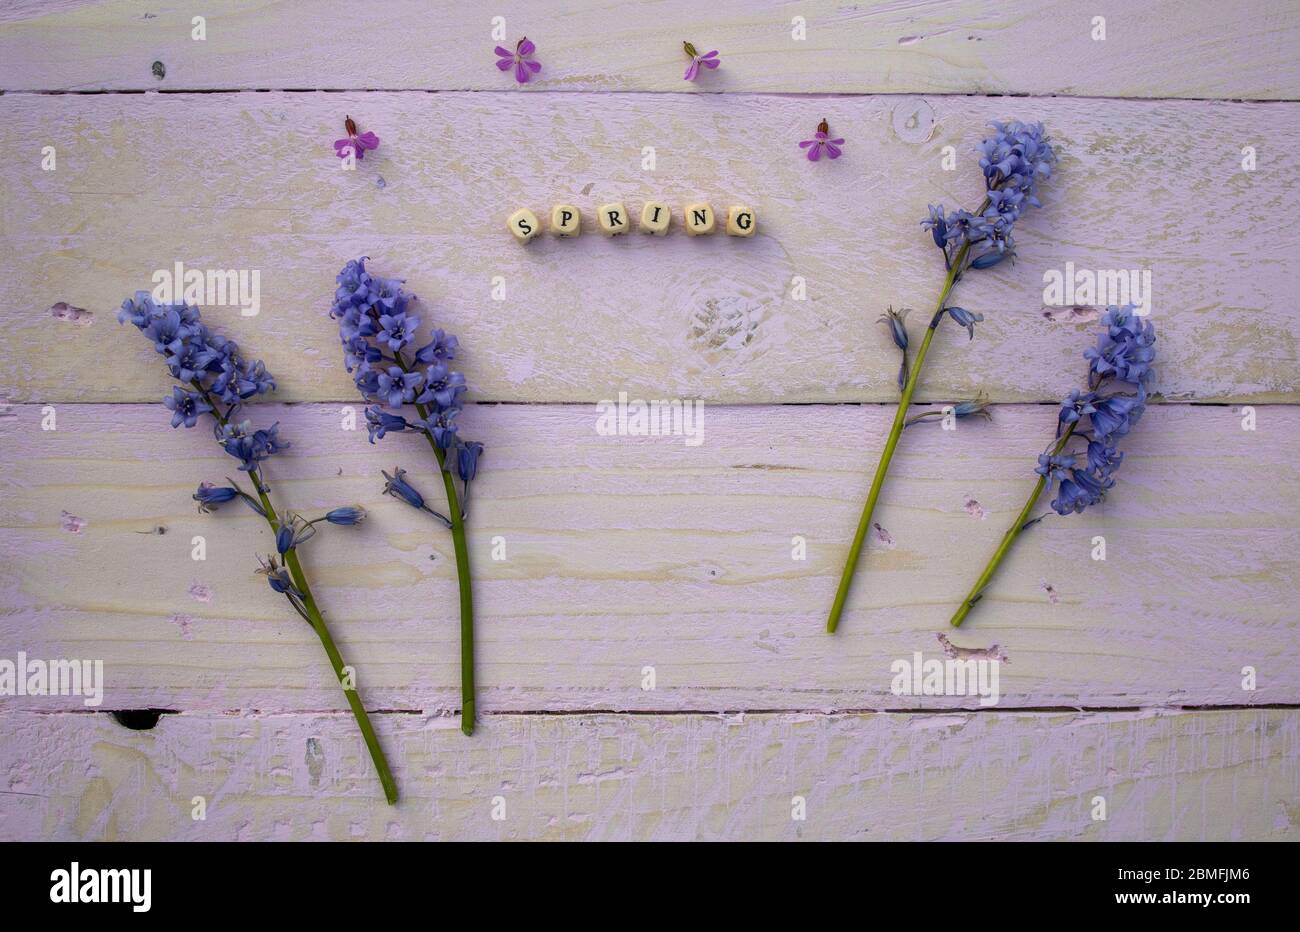 Foto plana de la cubierta con flores azules de la campana con la palabra primavera espelta con cuentas Foto de stock